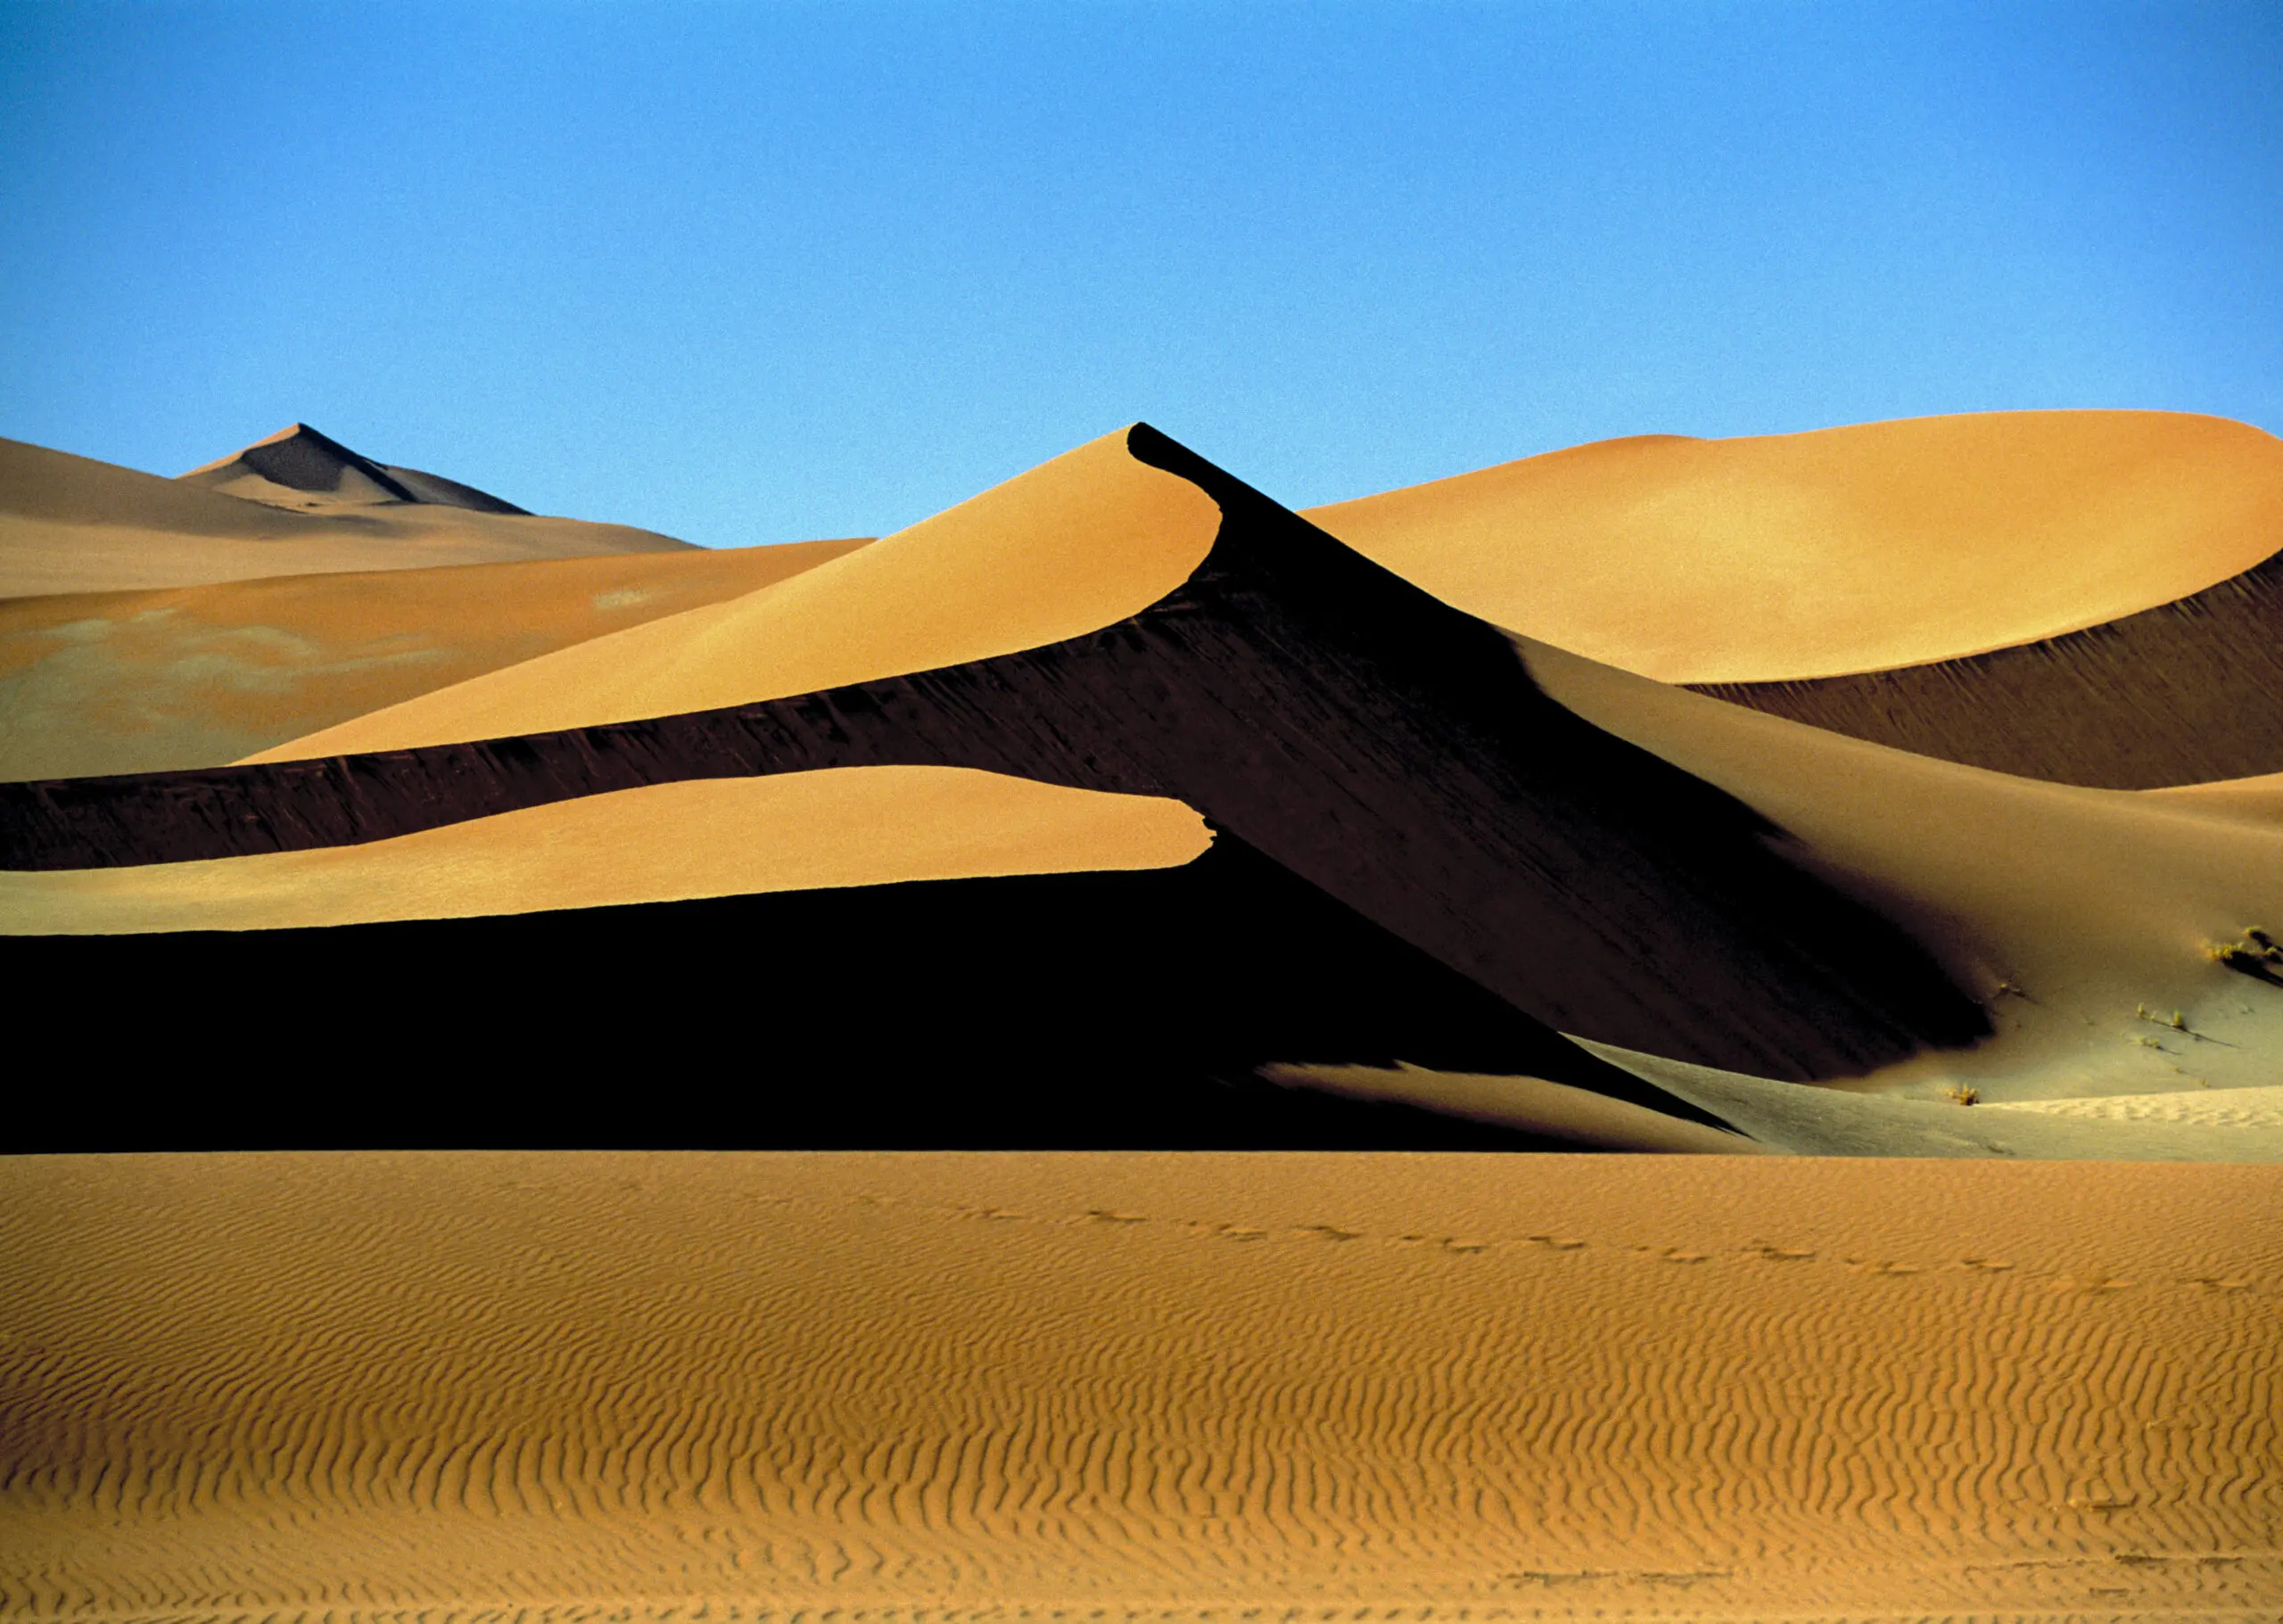 Wandbild (202) Desert1 präsentiert: Landschaften,Wüste